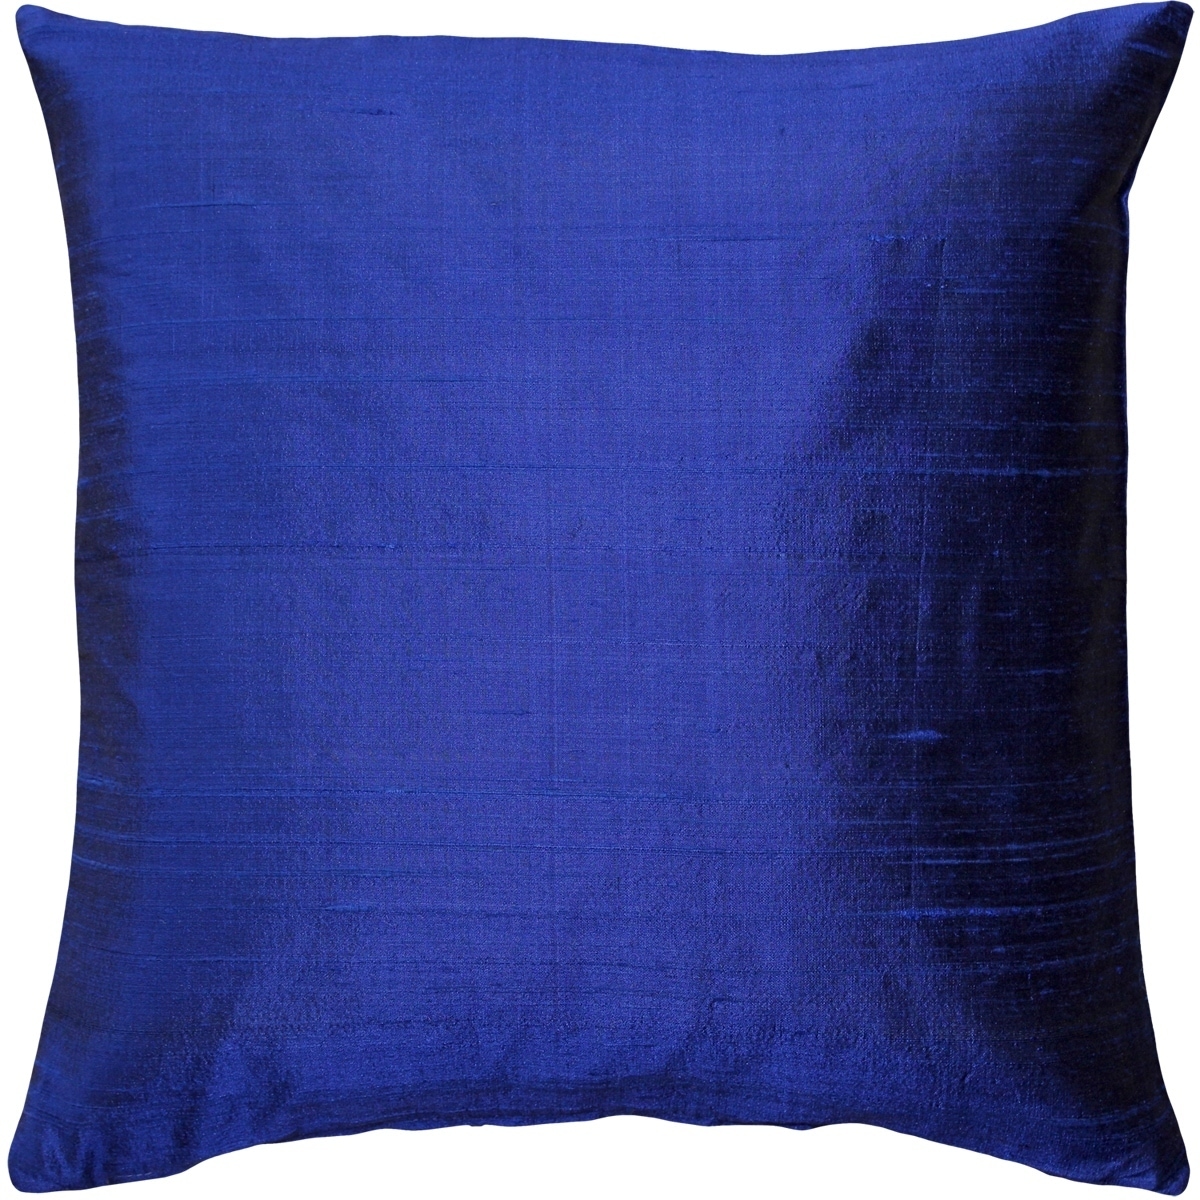 Sankara Peacock Blue Silk Throw Pillow 18x18 - Pillow Decor